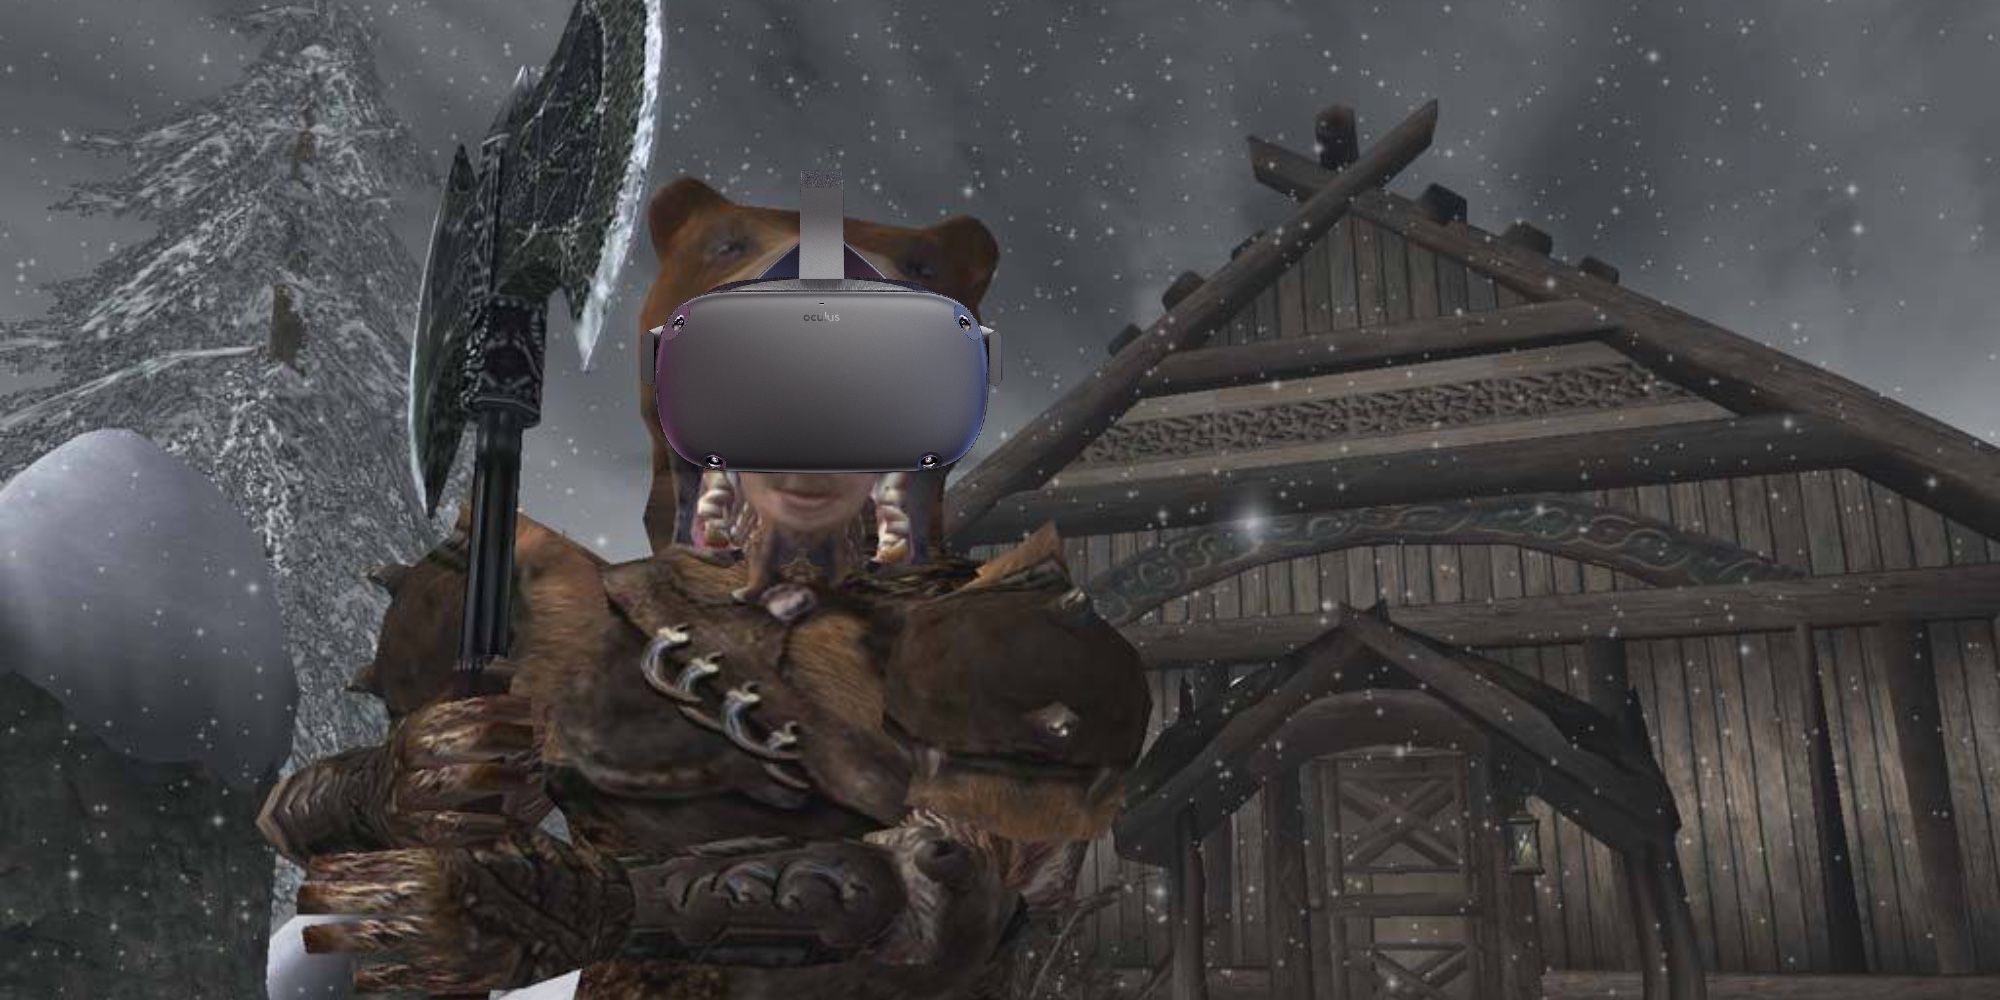 Morrowind VR